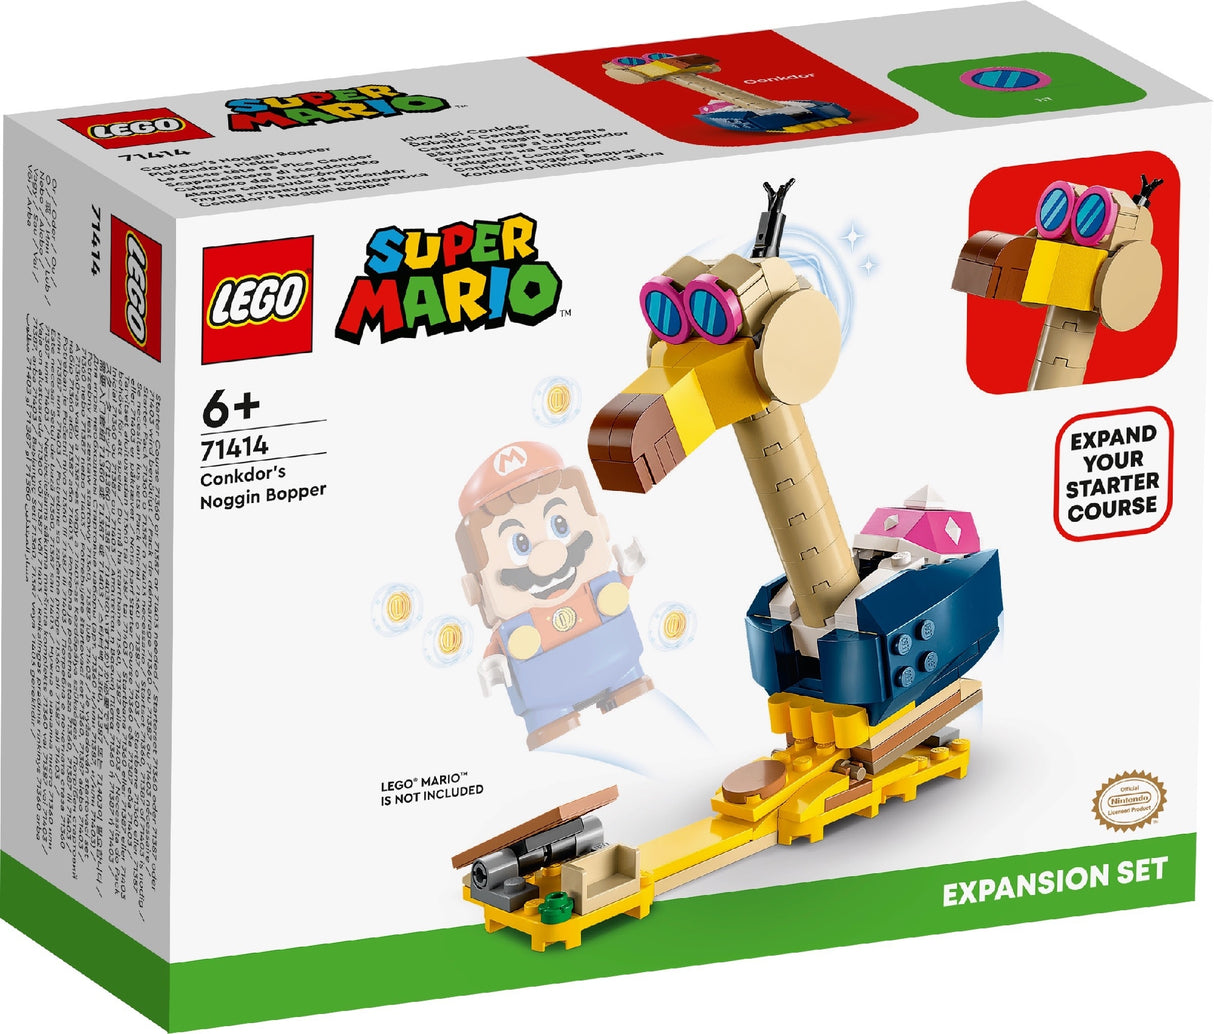 LEGO SUPER MARIO CONKDOR'S NOGGIN BOPPER EXPANSION SET 71414 AGE: 6+